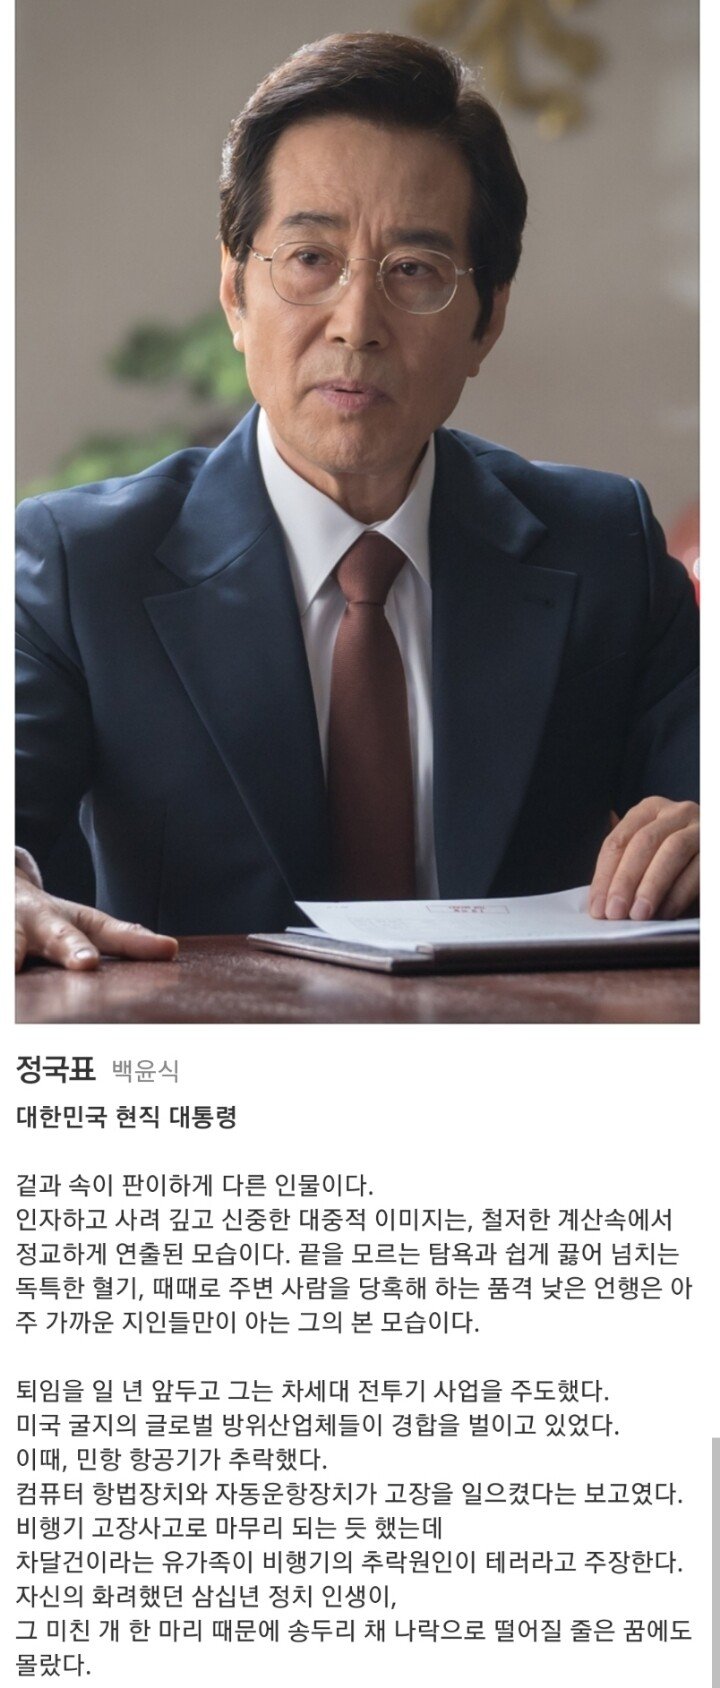 SBS 드라마 배가본드 악역 라인업